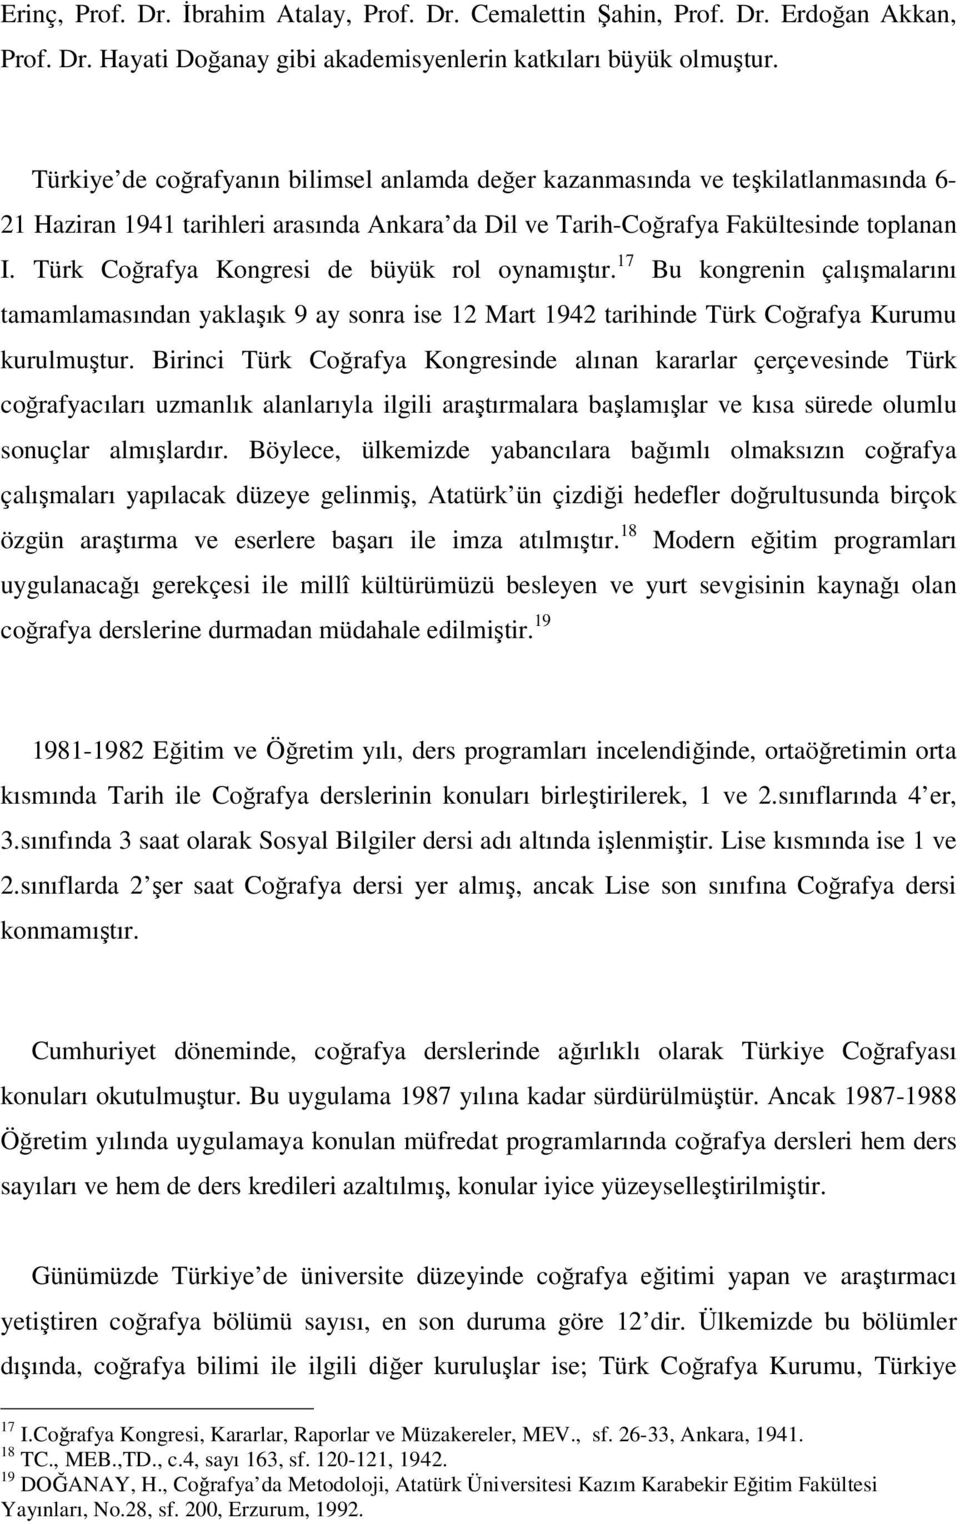 Türk Coğrafya Kongresi de büyük rol oynamıştır. 17 Bu kongrenin çalışmalarını tamamlamasından yaklaşık 9 ay sonra ise 12 Mart 1942 tarihinde Türk Coğrafya Kurumu kurulmuştur.